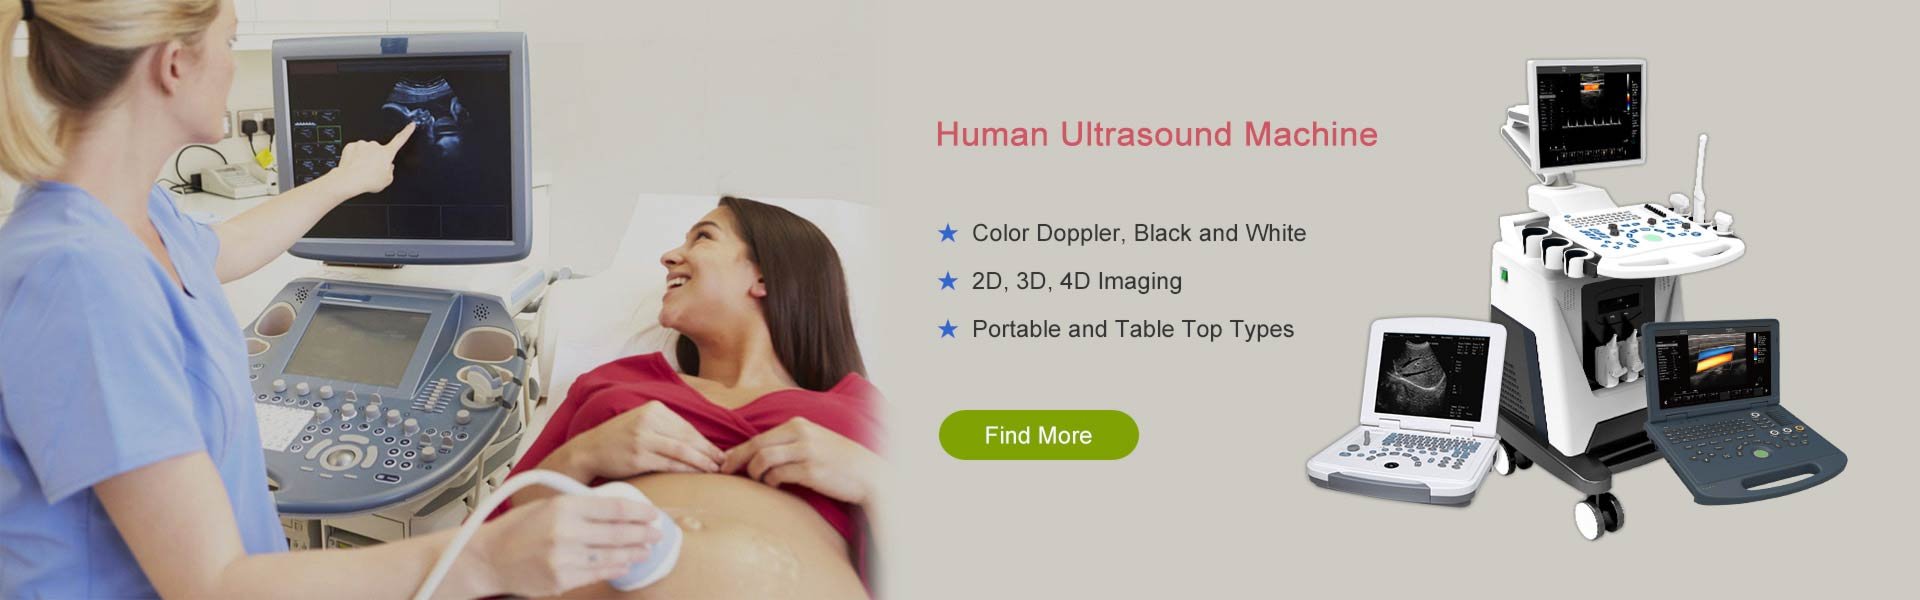 human ultrasound machines